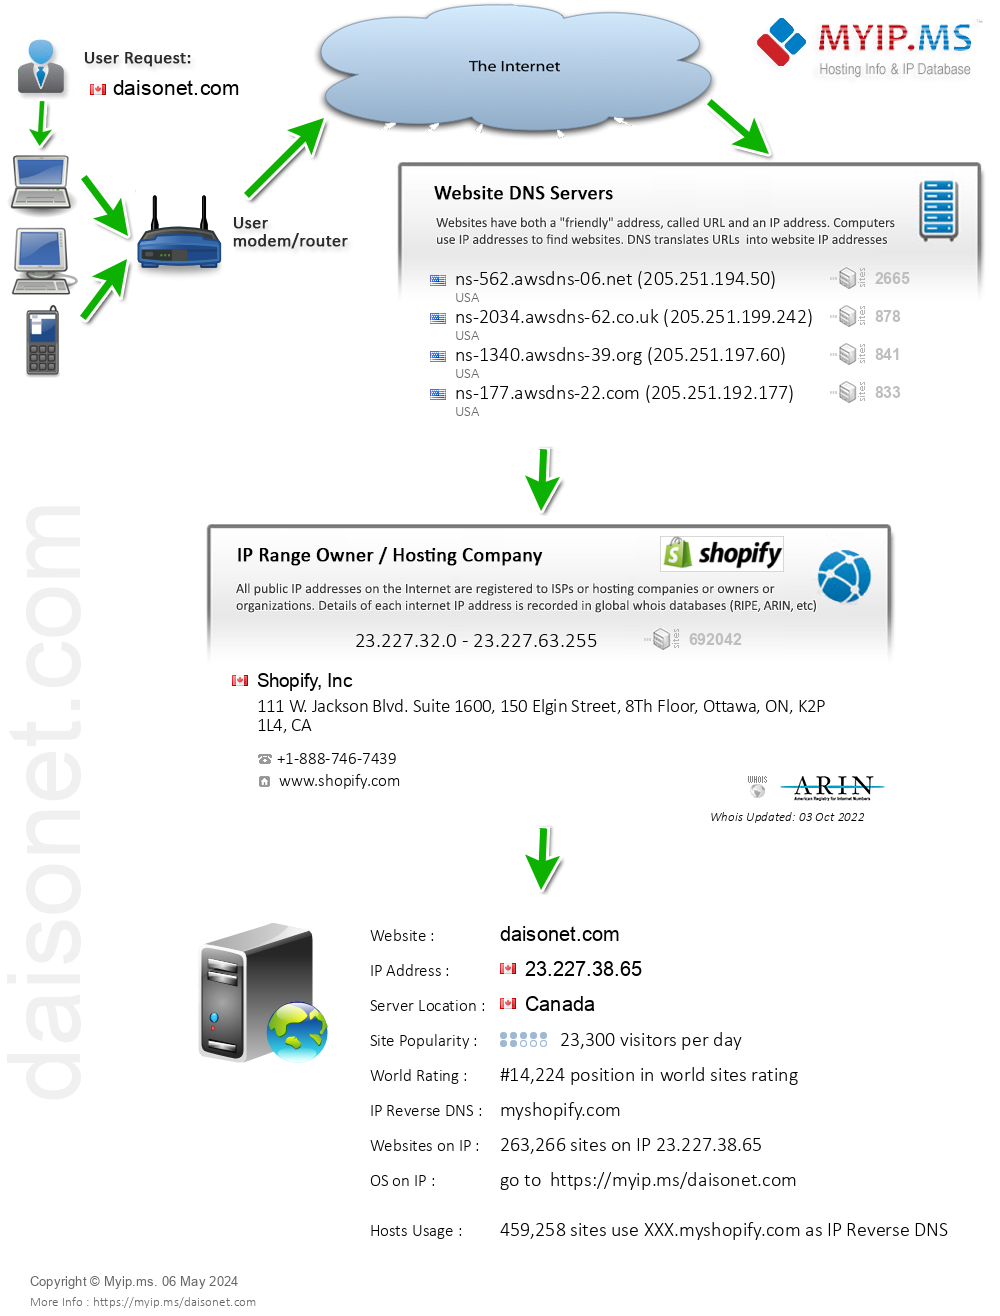 Daisonet.com - Website Hosting Visual IP Diagram